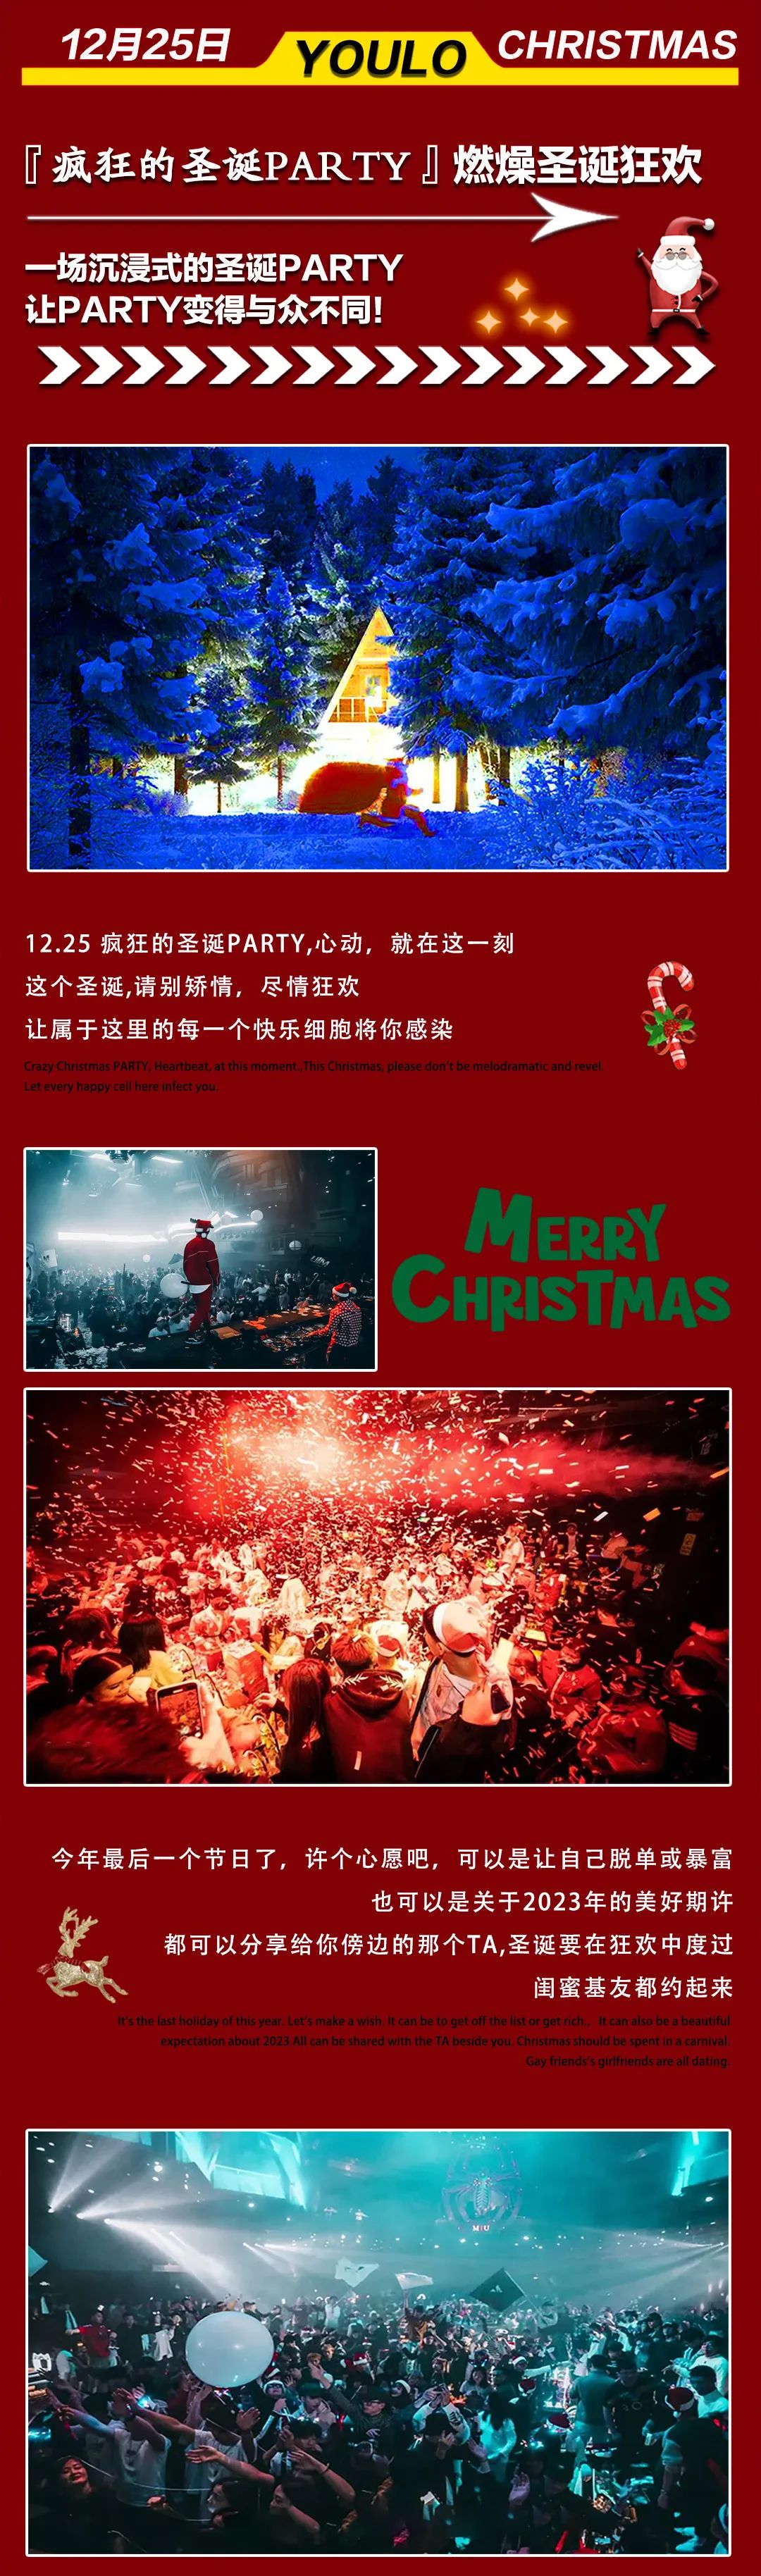 2022YOULO圣诞电音派对-杭州站